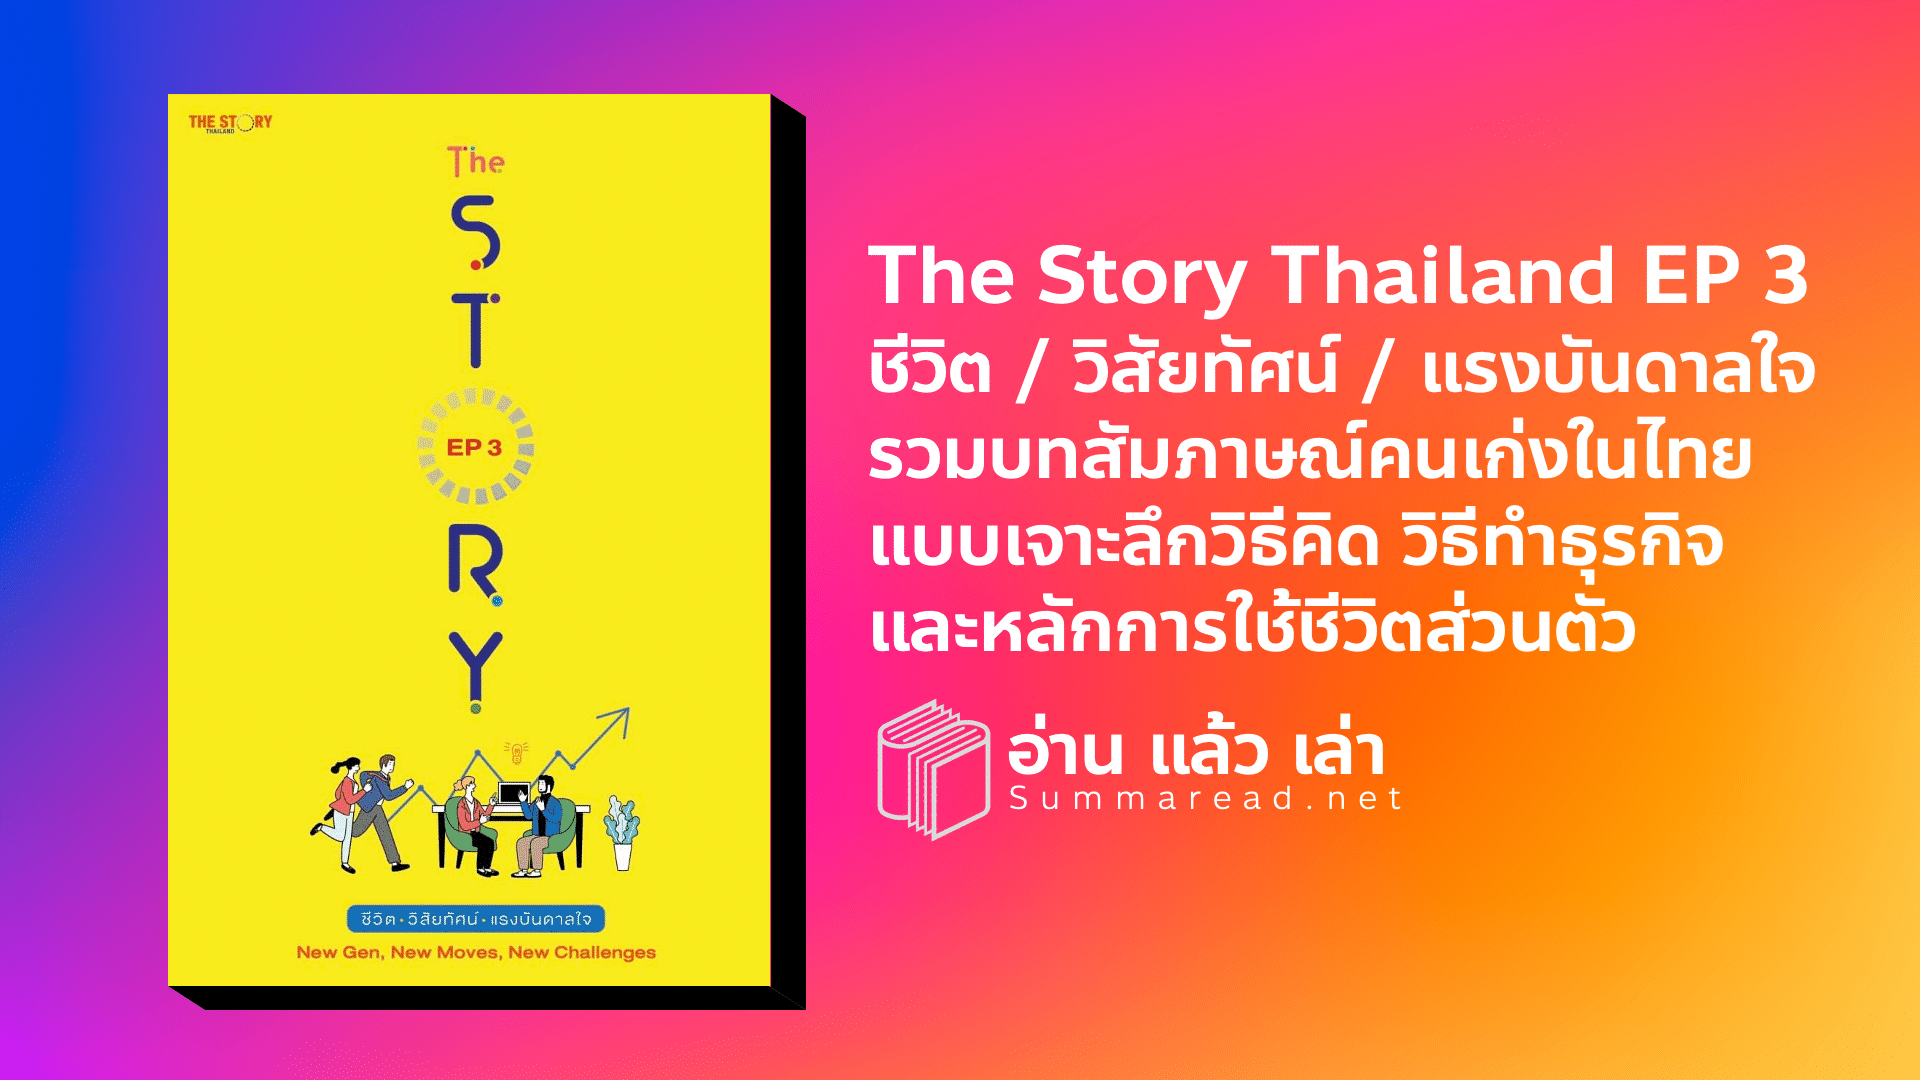 สรุปหนังสือ The Story Thailand EP 3 ชีวิต วิสัยทัศน์ แรงบันดาลใจ New Gen, New Moves, New Challenges, The Story Thailand